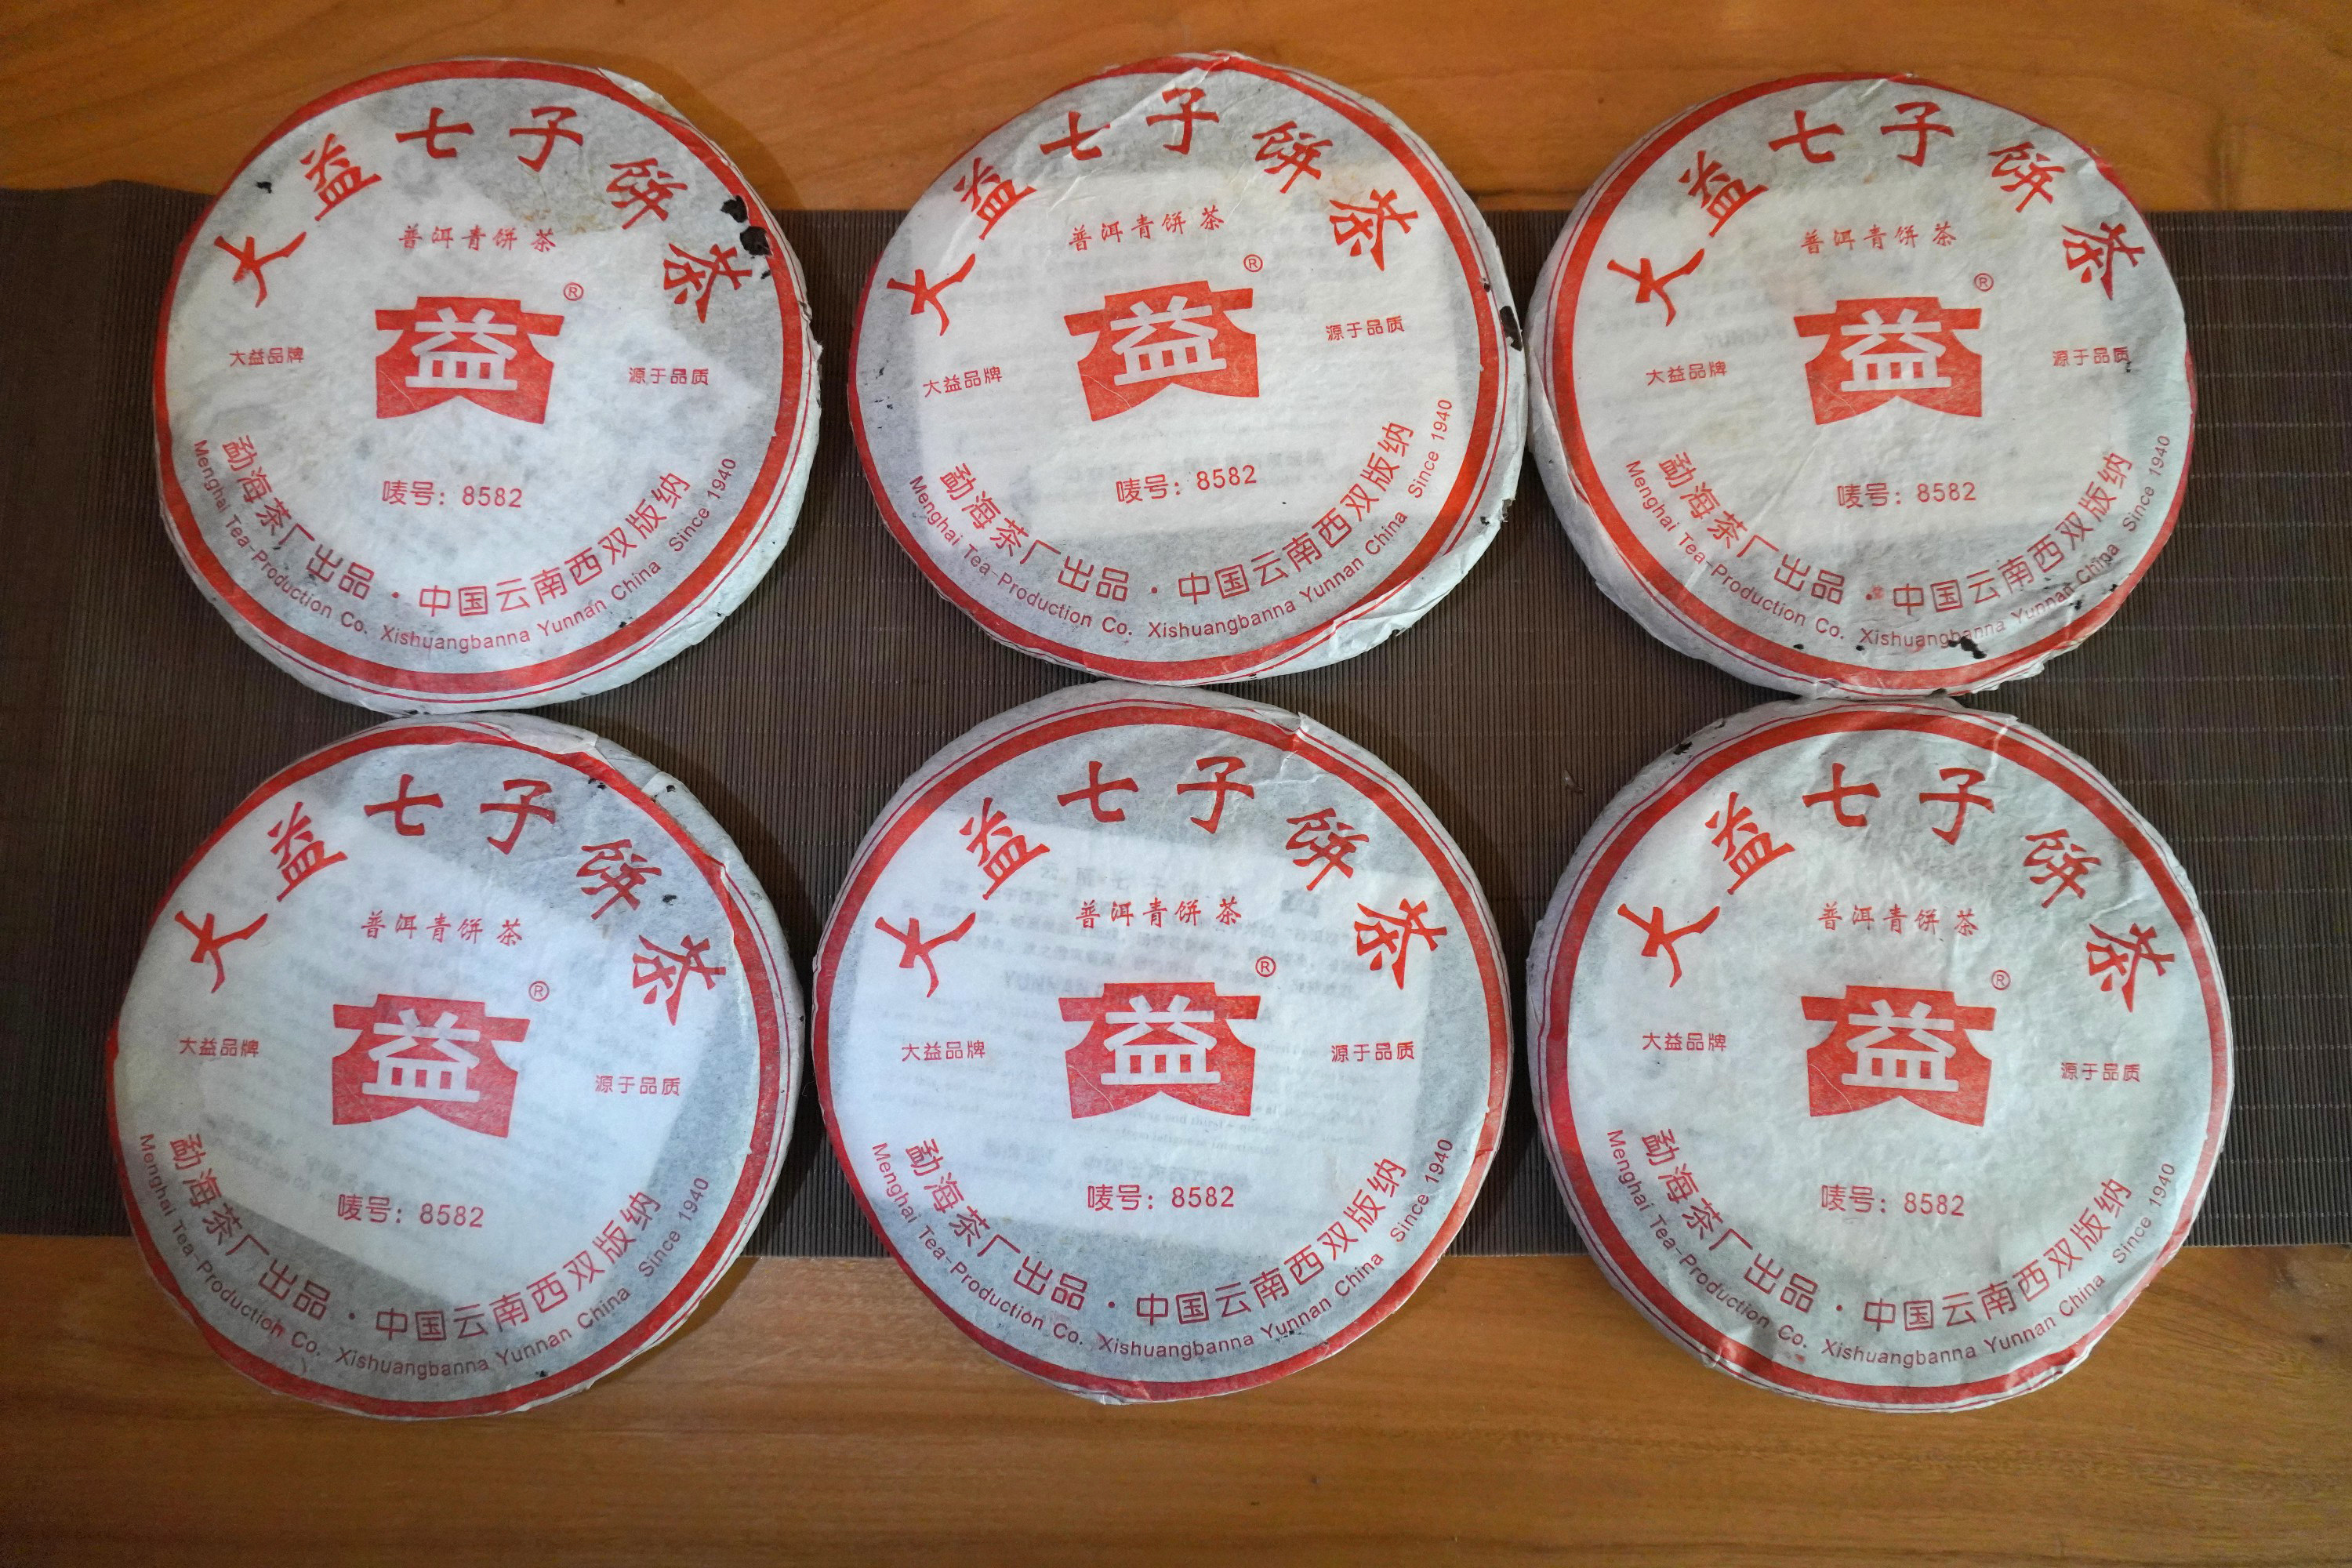 名震普洱江湖的8582：勐海茶厂出品，经典普洱生茶标杆配方